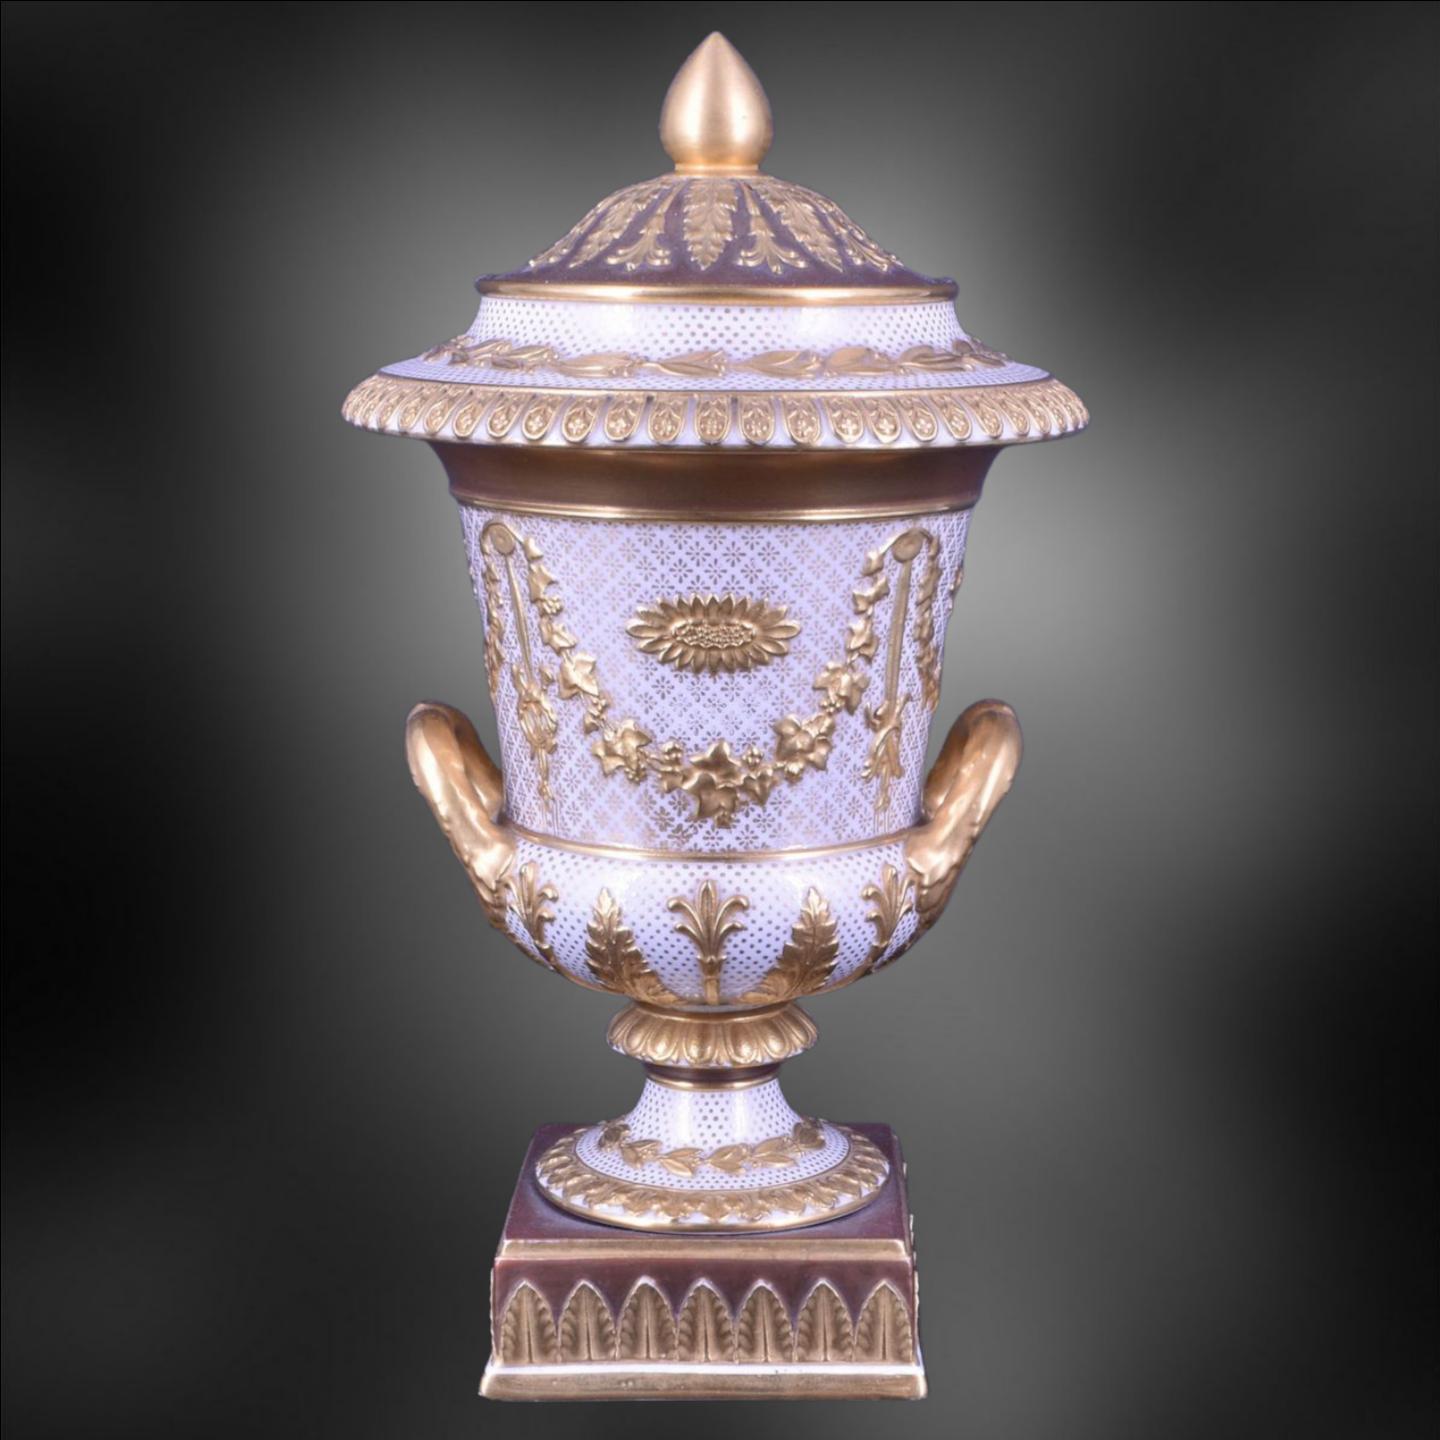 Eine wunderbare Kombination des traditionellen neoklassischen Stils von Wedgwood in Form einer Campana-Vase, die im hochviktorianischen Stil mit Vergoldung und Bronzierung verziert wurde.

